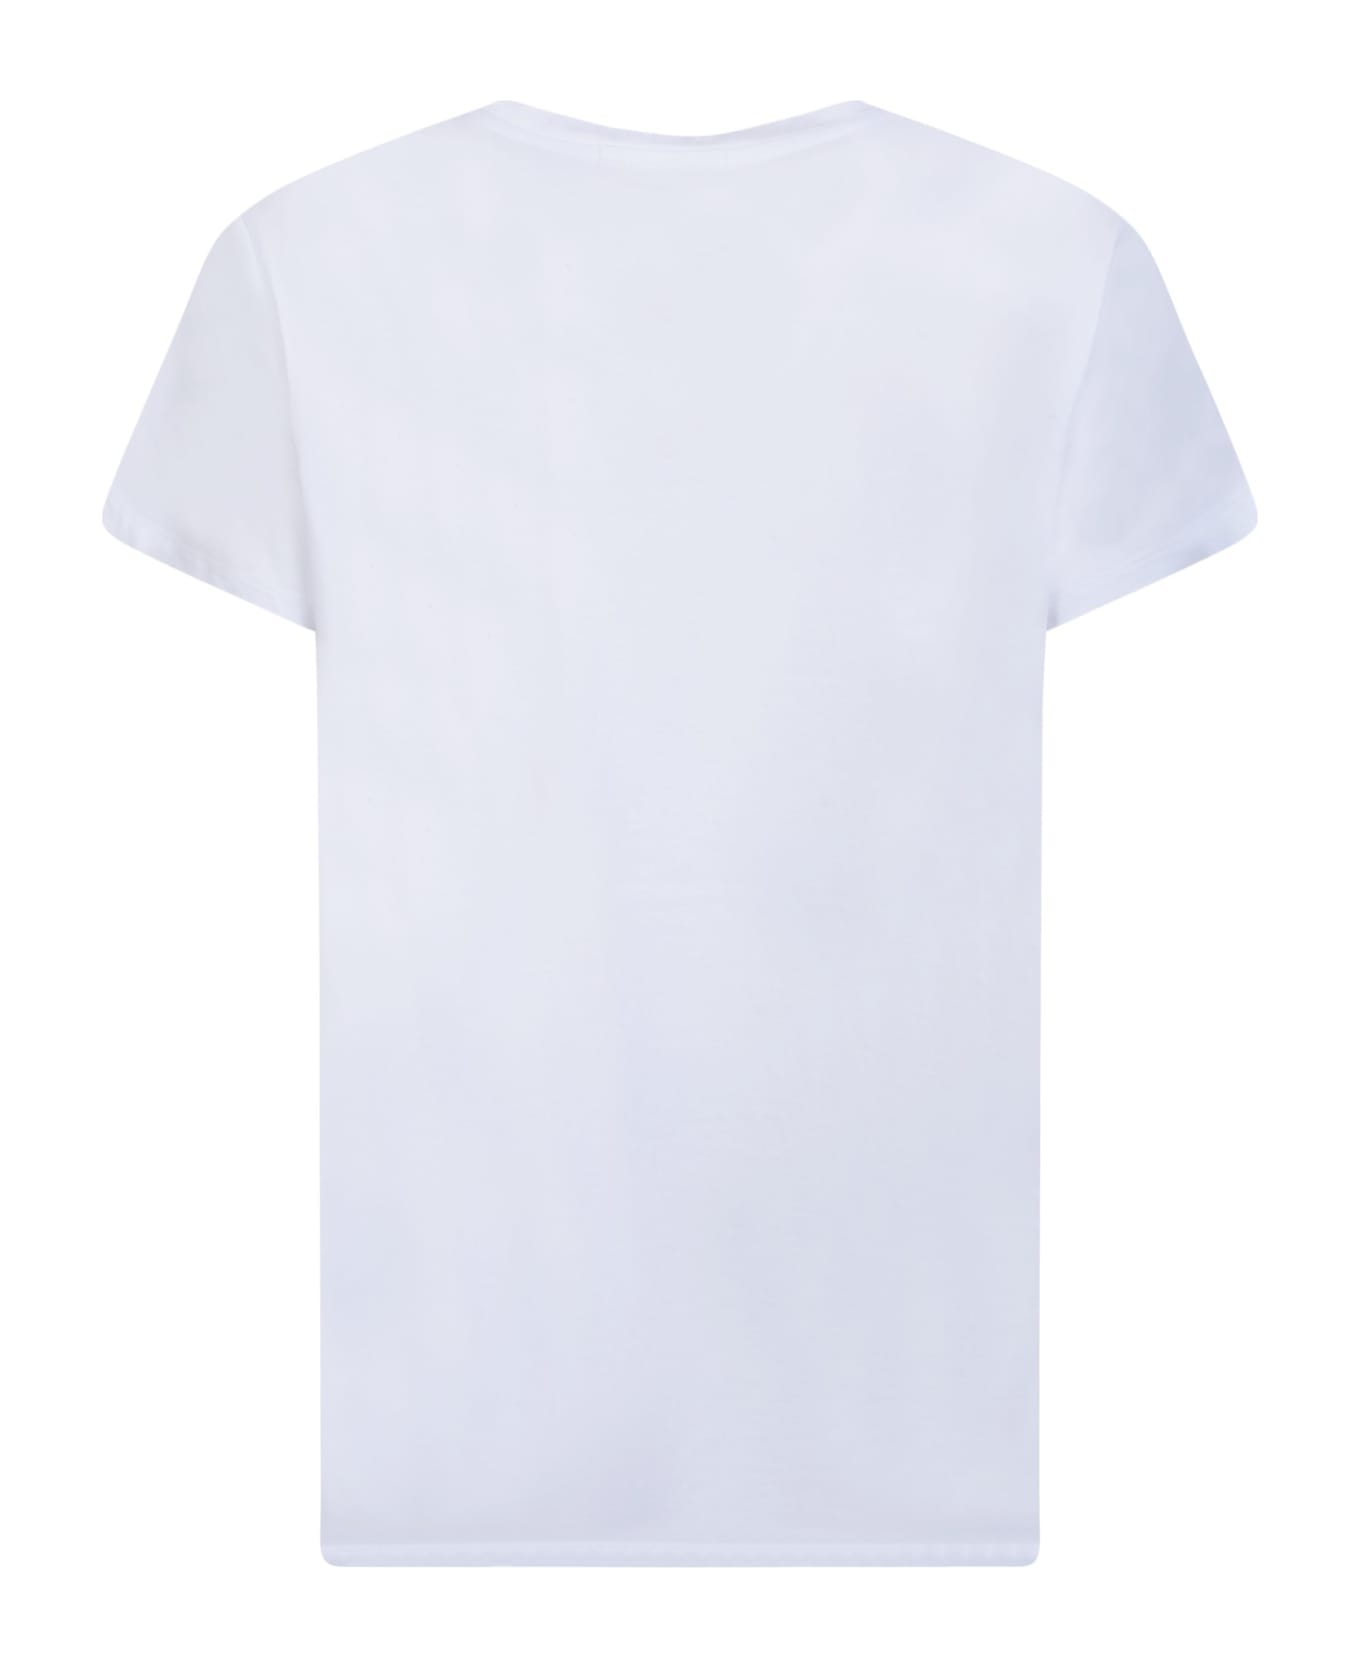 14 Bros Chest Logo White T-shirt - White シャツ